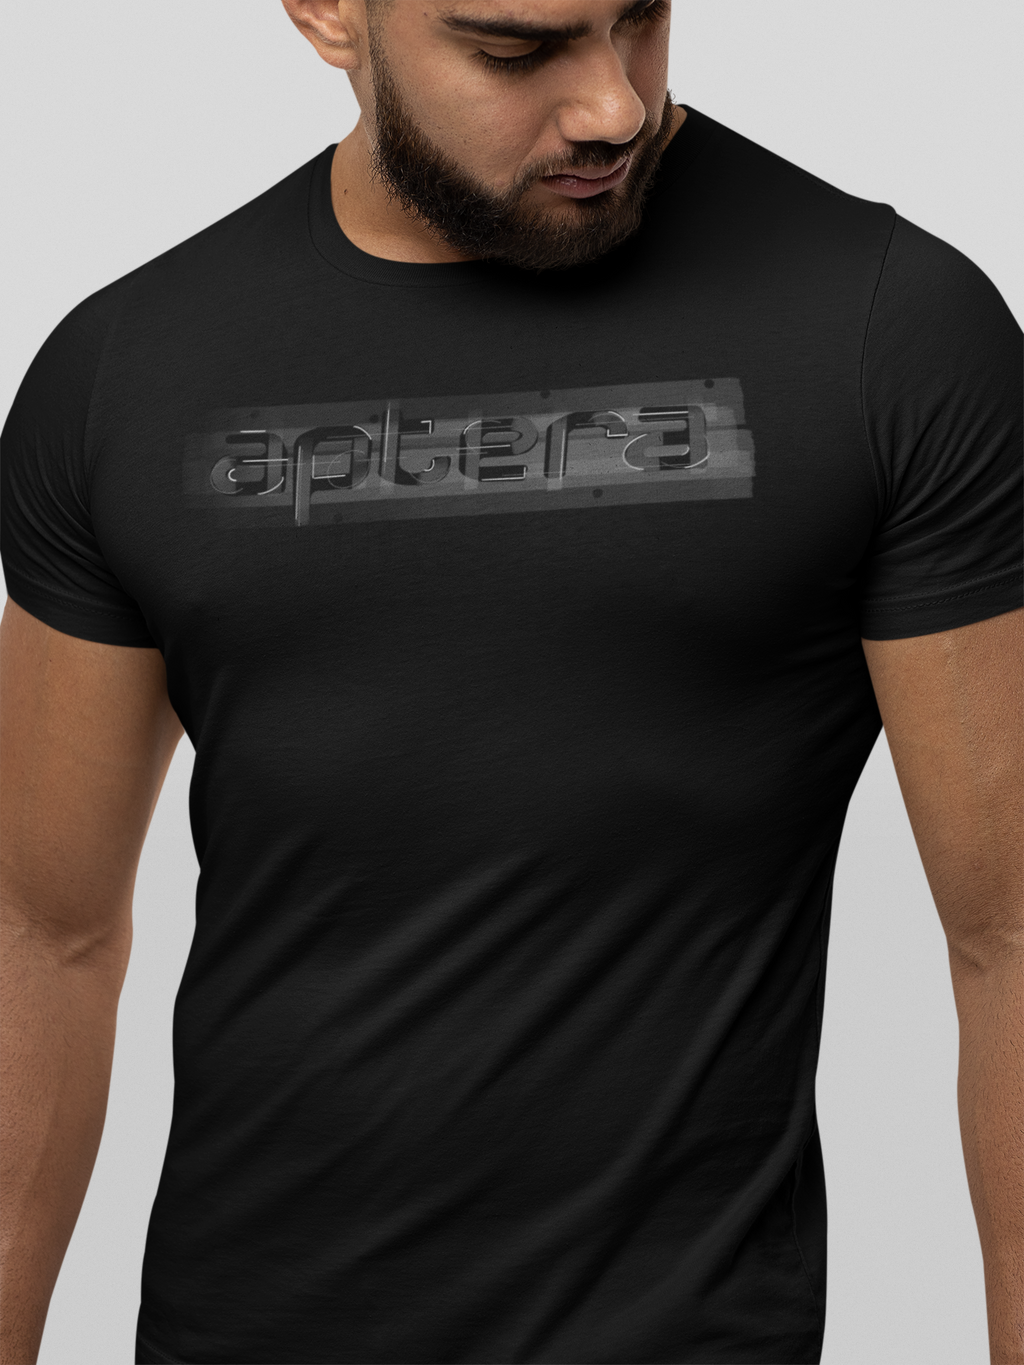 aptera (name)| T-shirt